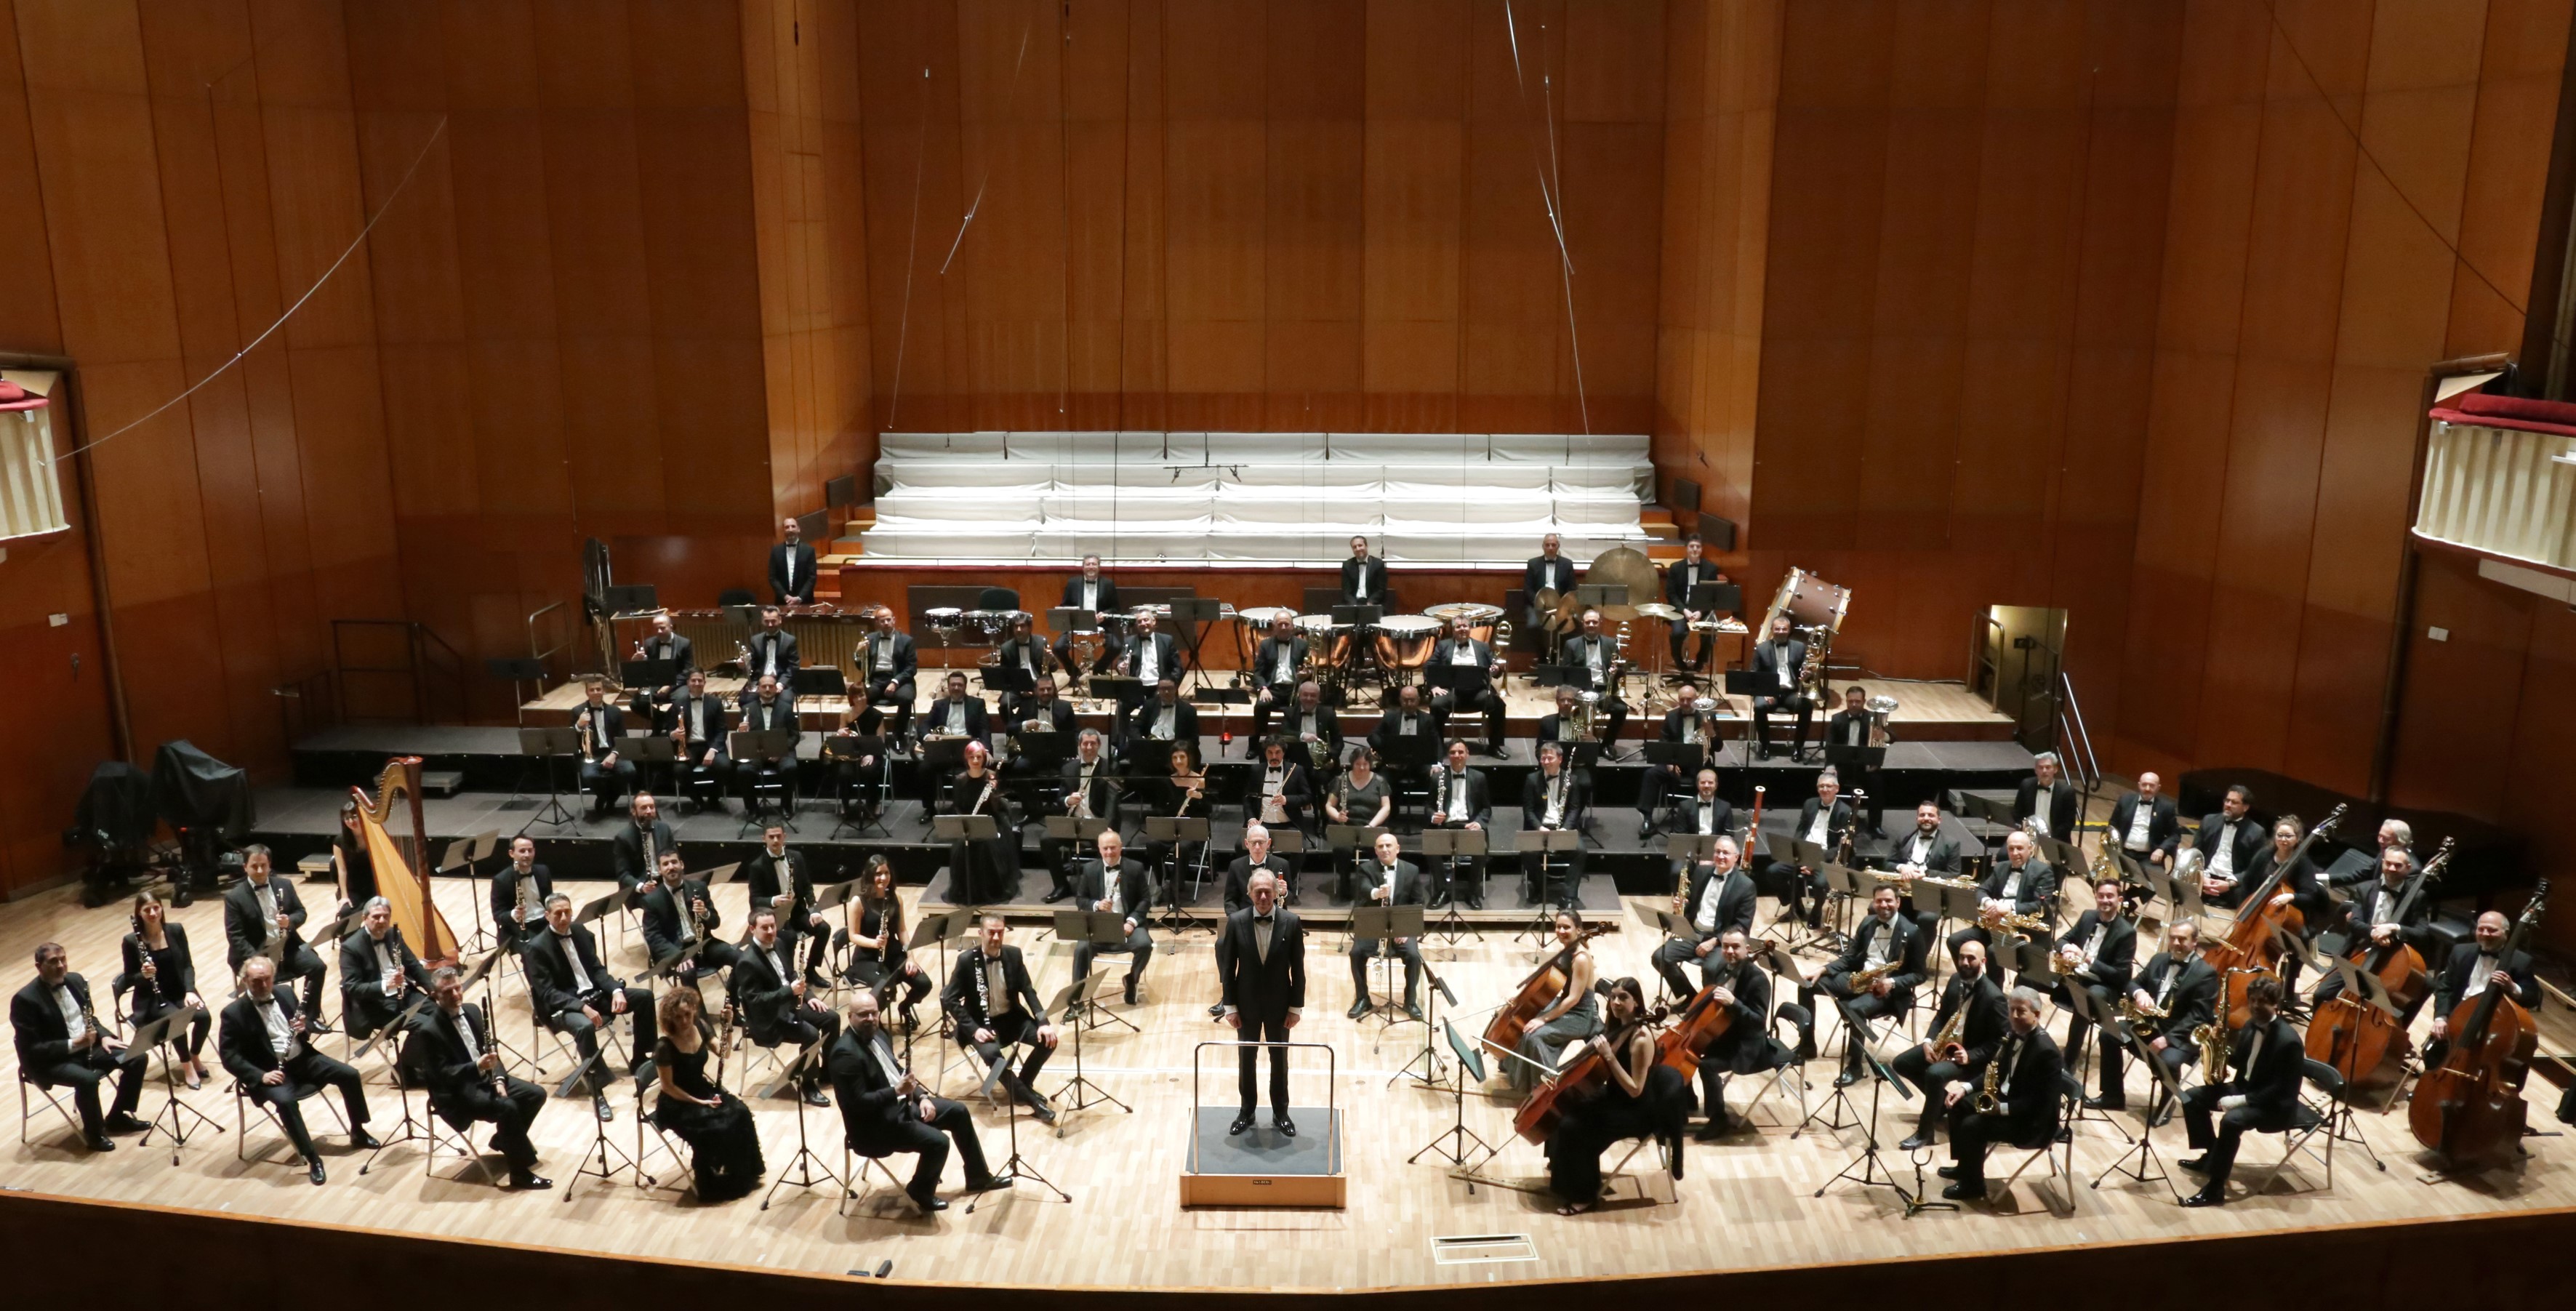 Banda Sinfónica Municipal de Madrid en un escenario, vista desde arriba.